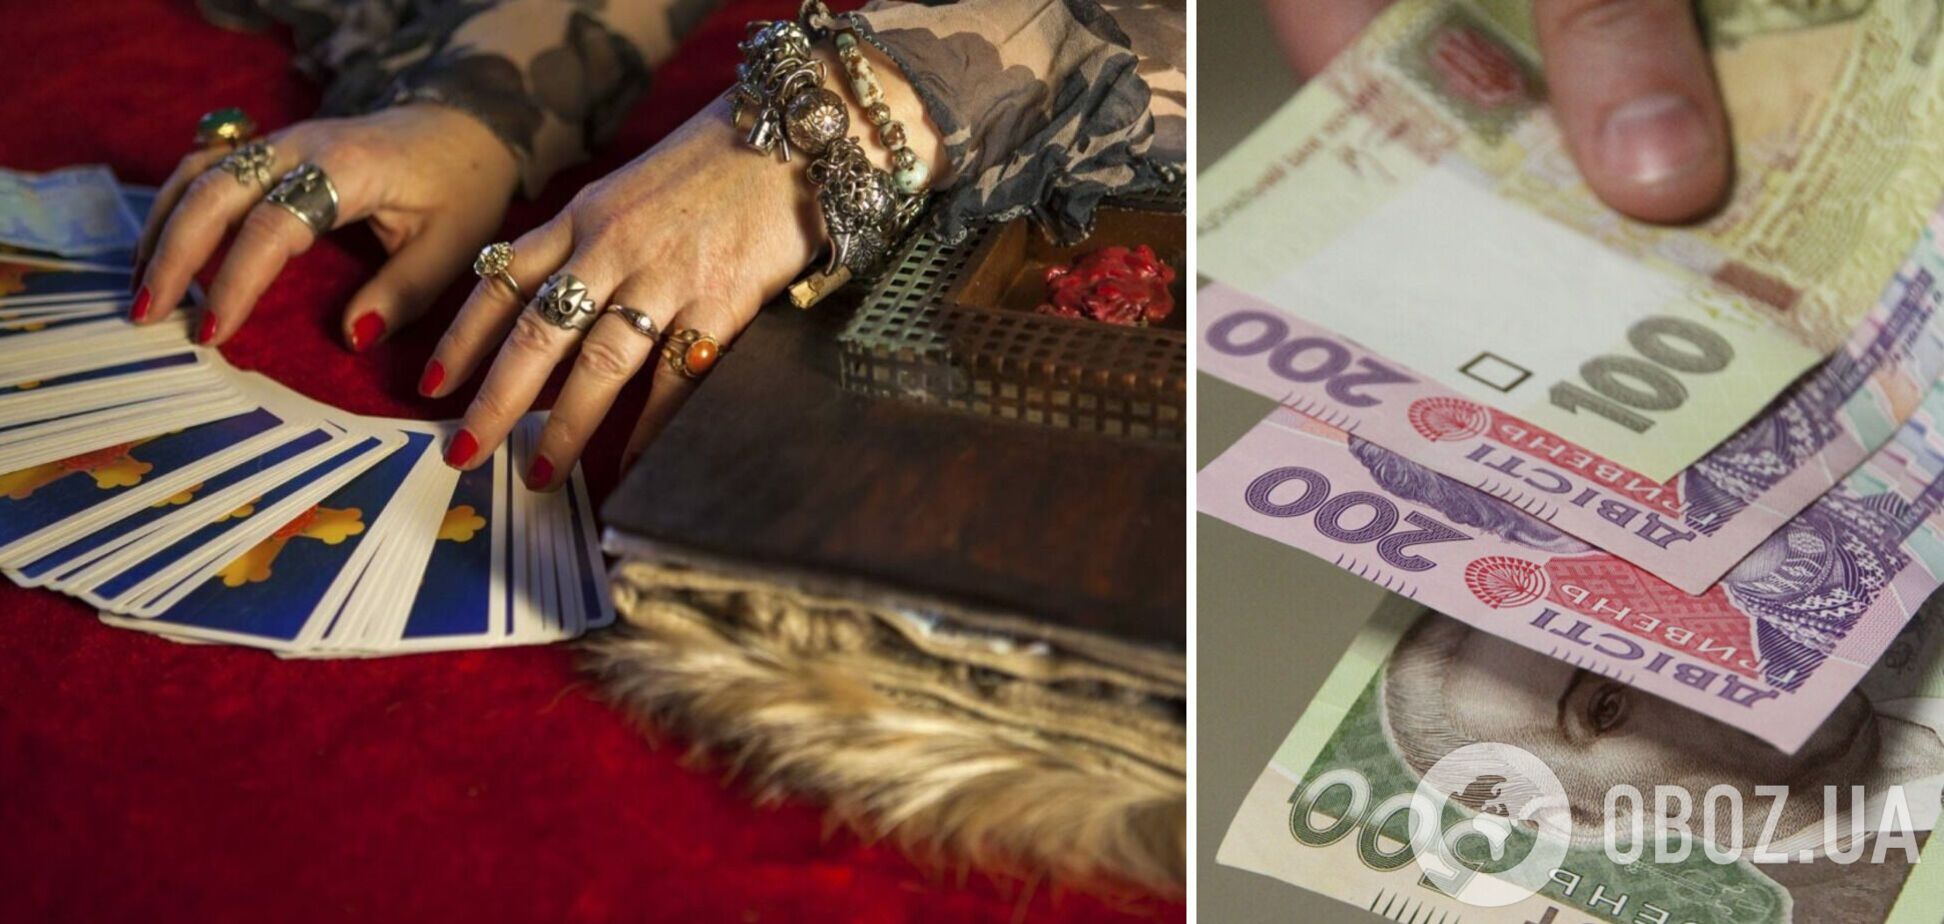 Жительница Почаева отдала гадалке 1,3 млн грн за телефонные консультации: хотела улучшения благосостояния и личного счастья